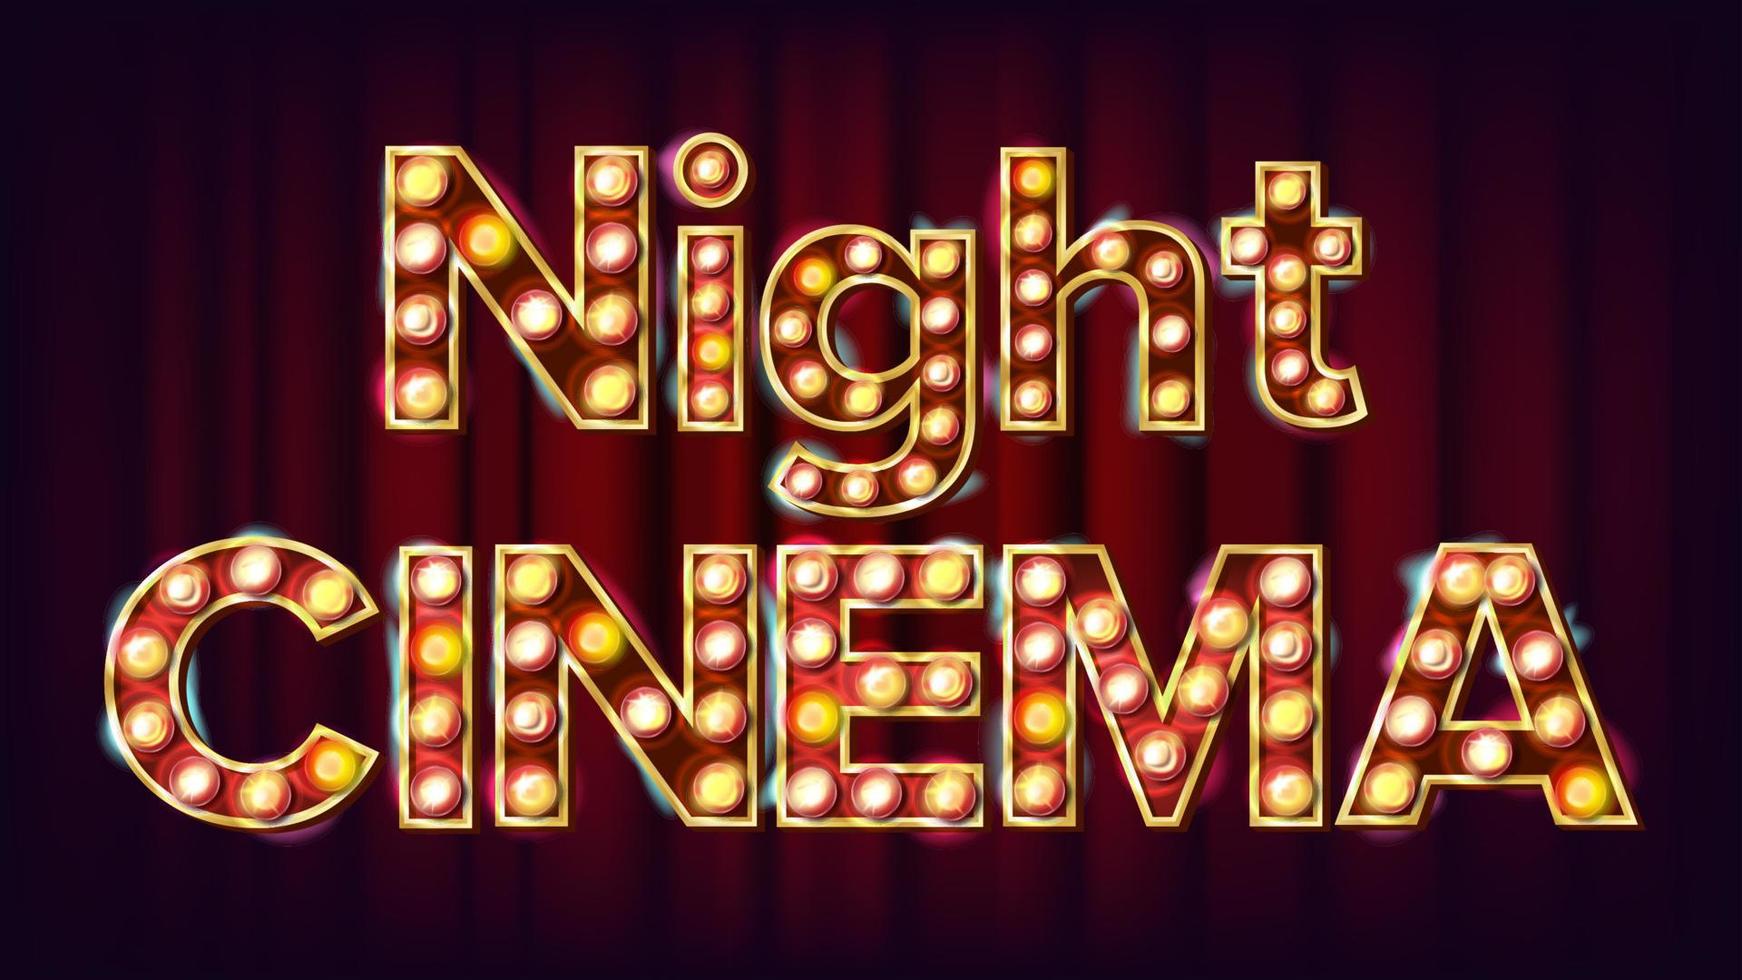 Nachtkino-Hintergrundvektor. theater kino golden beleuchtetes neonlicht. für Theater, Filmgestaltung. klassische Abbildung vektor